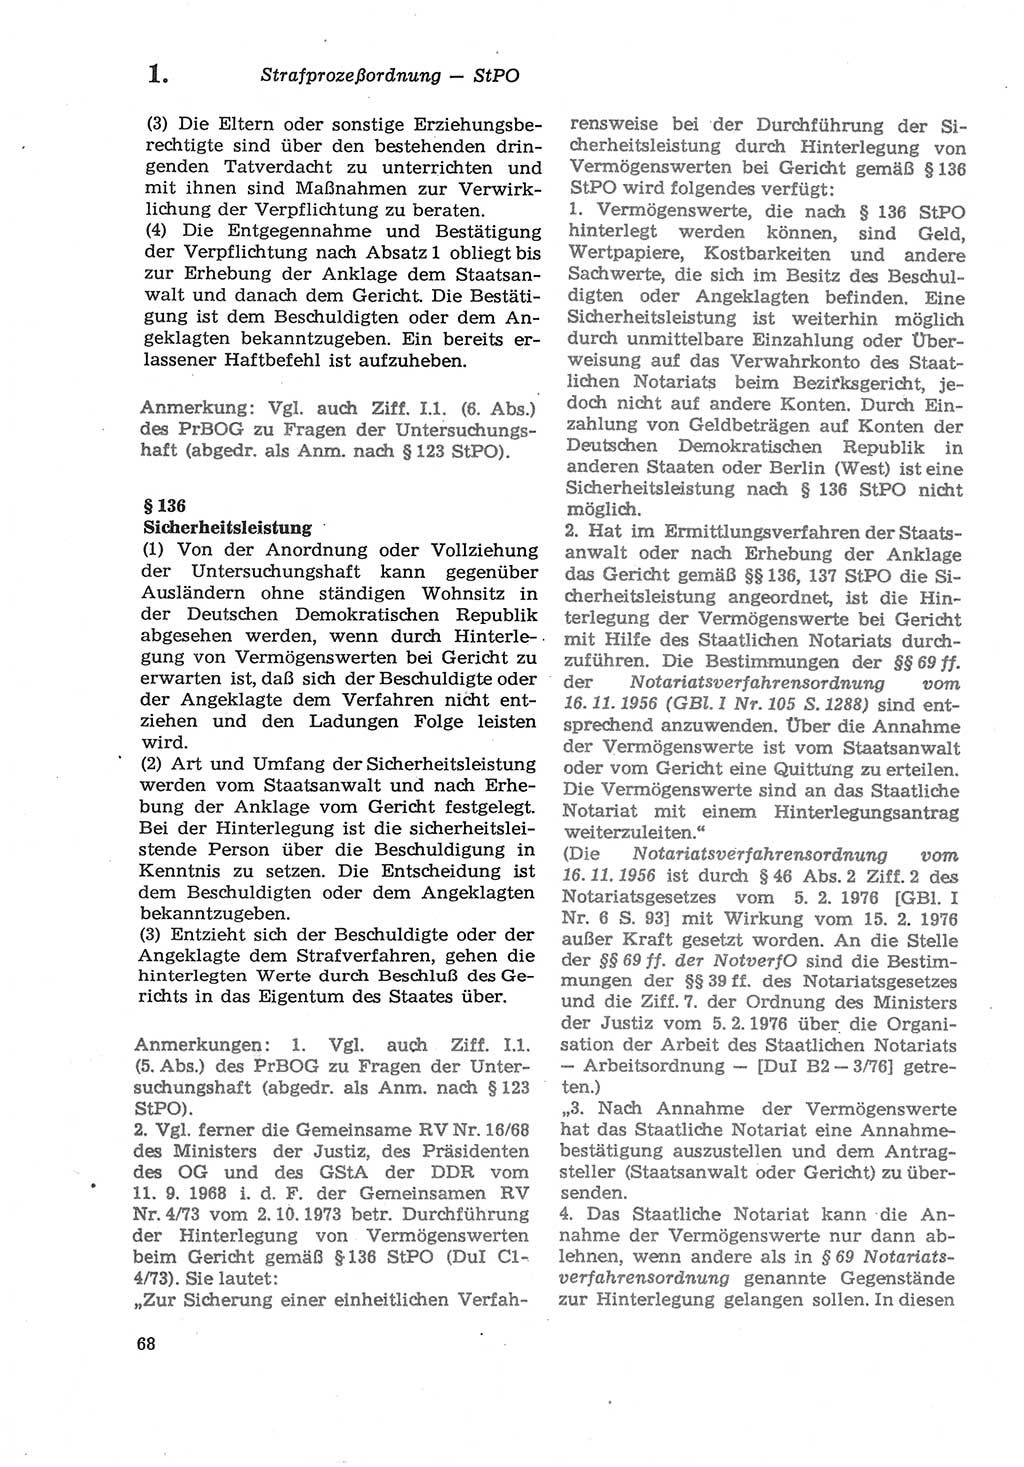 Strafprozeßordnung (StPO) der Deutschen Demokratischen Republik (DDR) sowie angrenzende Gesetze und Bestimmungen 1979, Seite 68 (StPO DDR Ges. Best. 1979, S. 68)